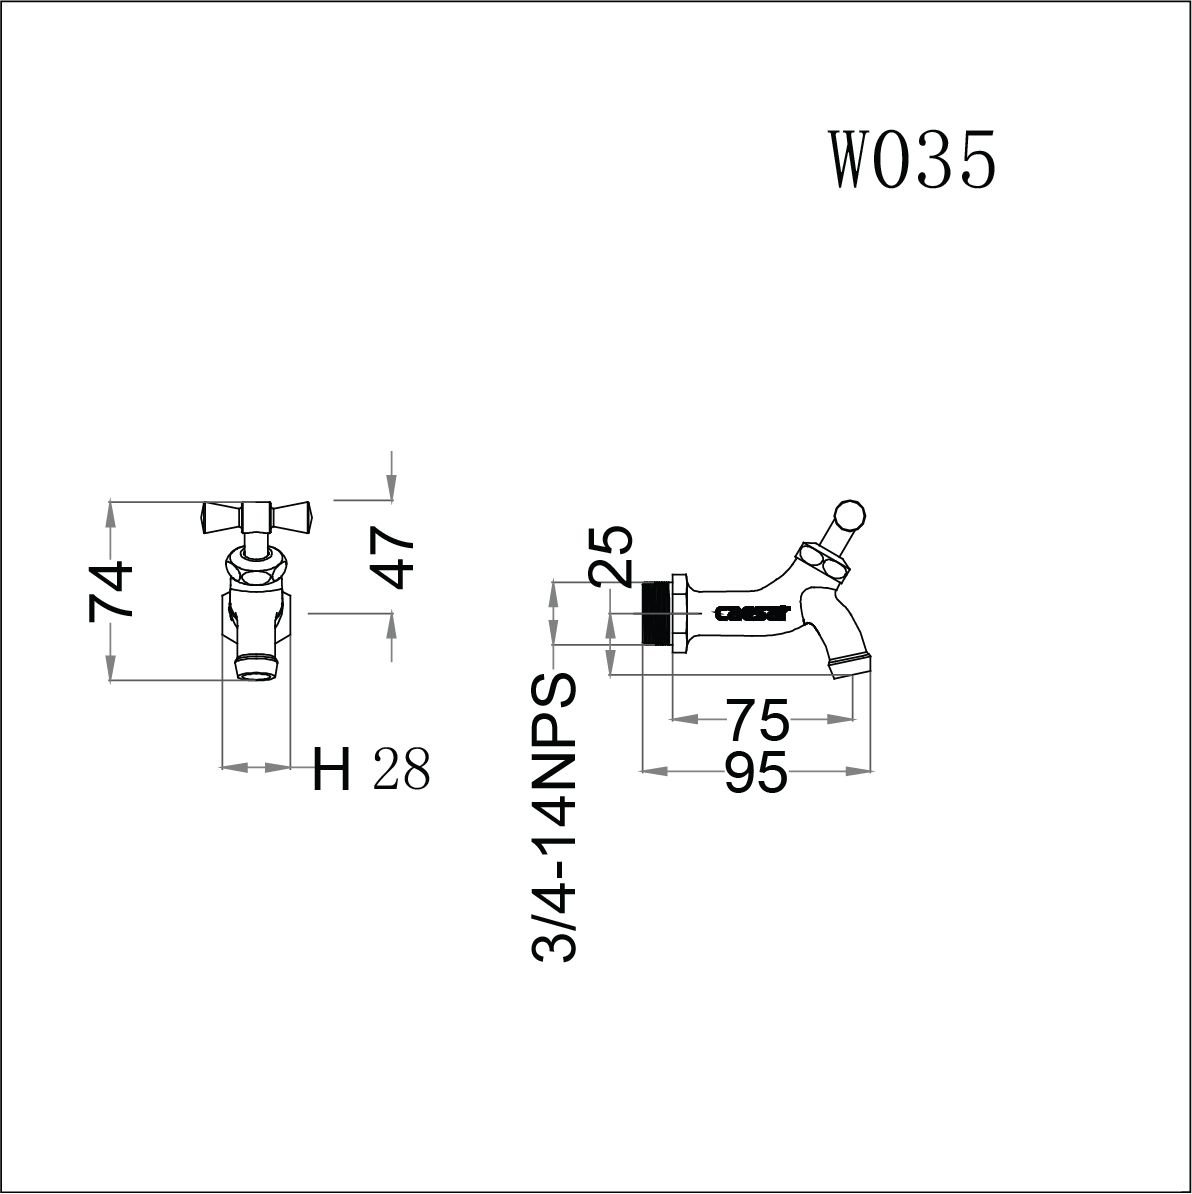  Vòi Lạnh Gắn Tường - W035 